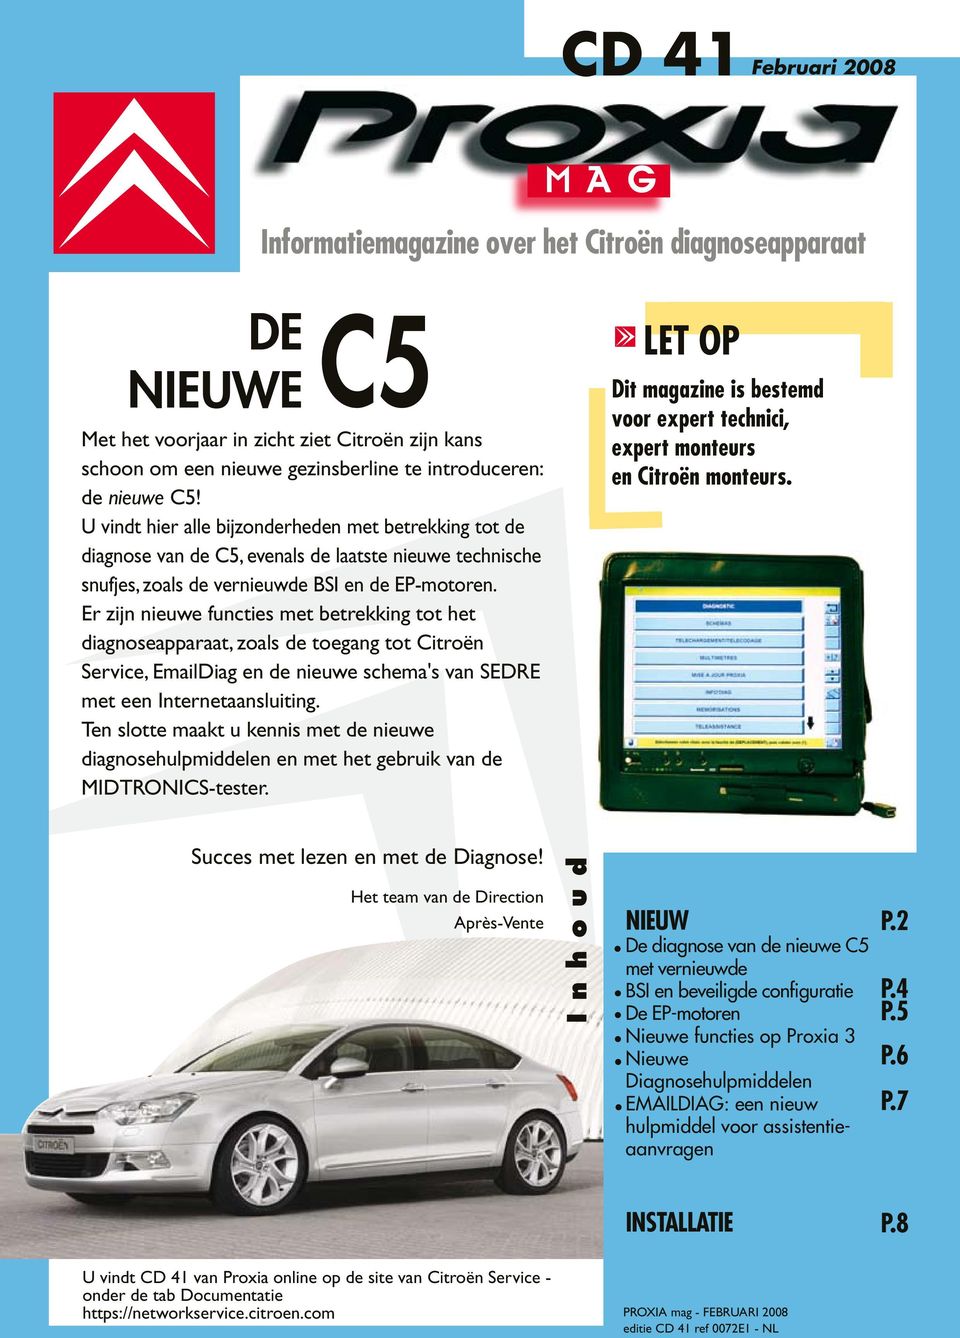 Er zijn nieuwe functies met betrekking tot het diagnoseapparaat, zoals de toegang tot Citroën Service, EmailDiag en de nieuwe schema's van SEDRE met een Internetaansluiting.